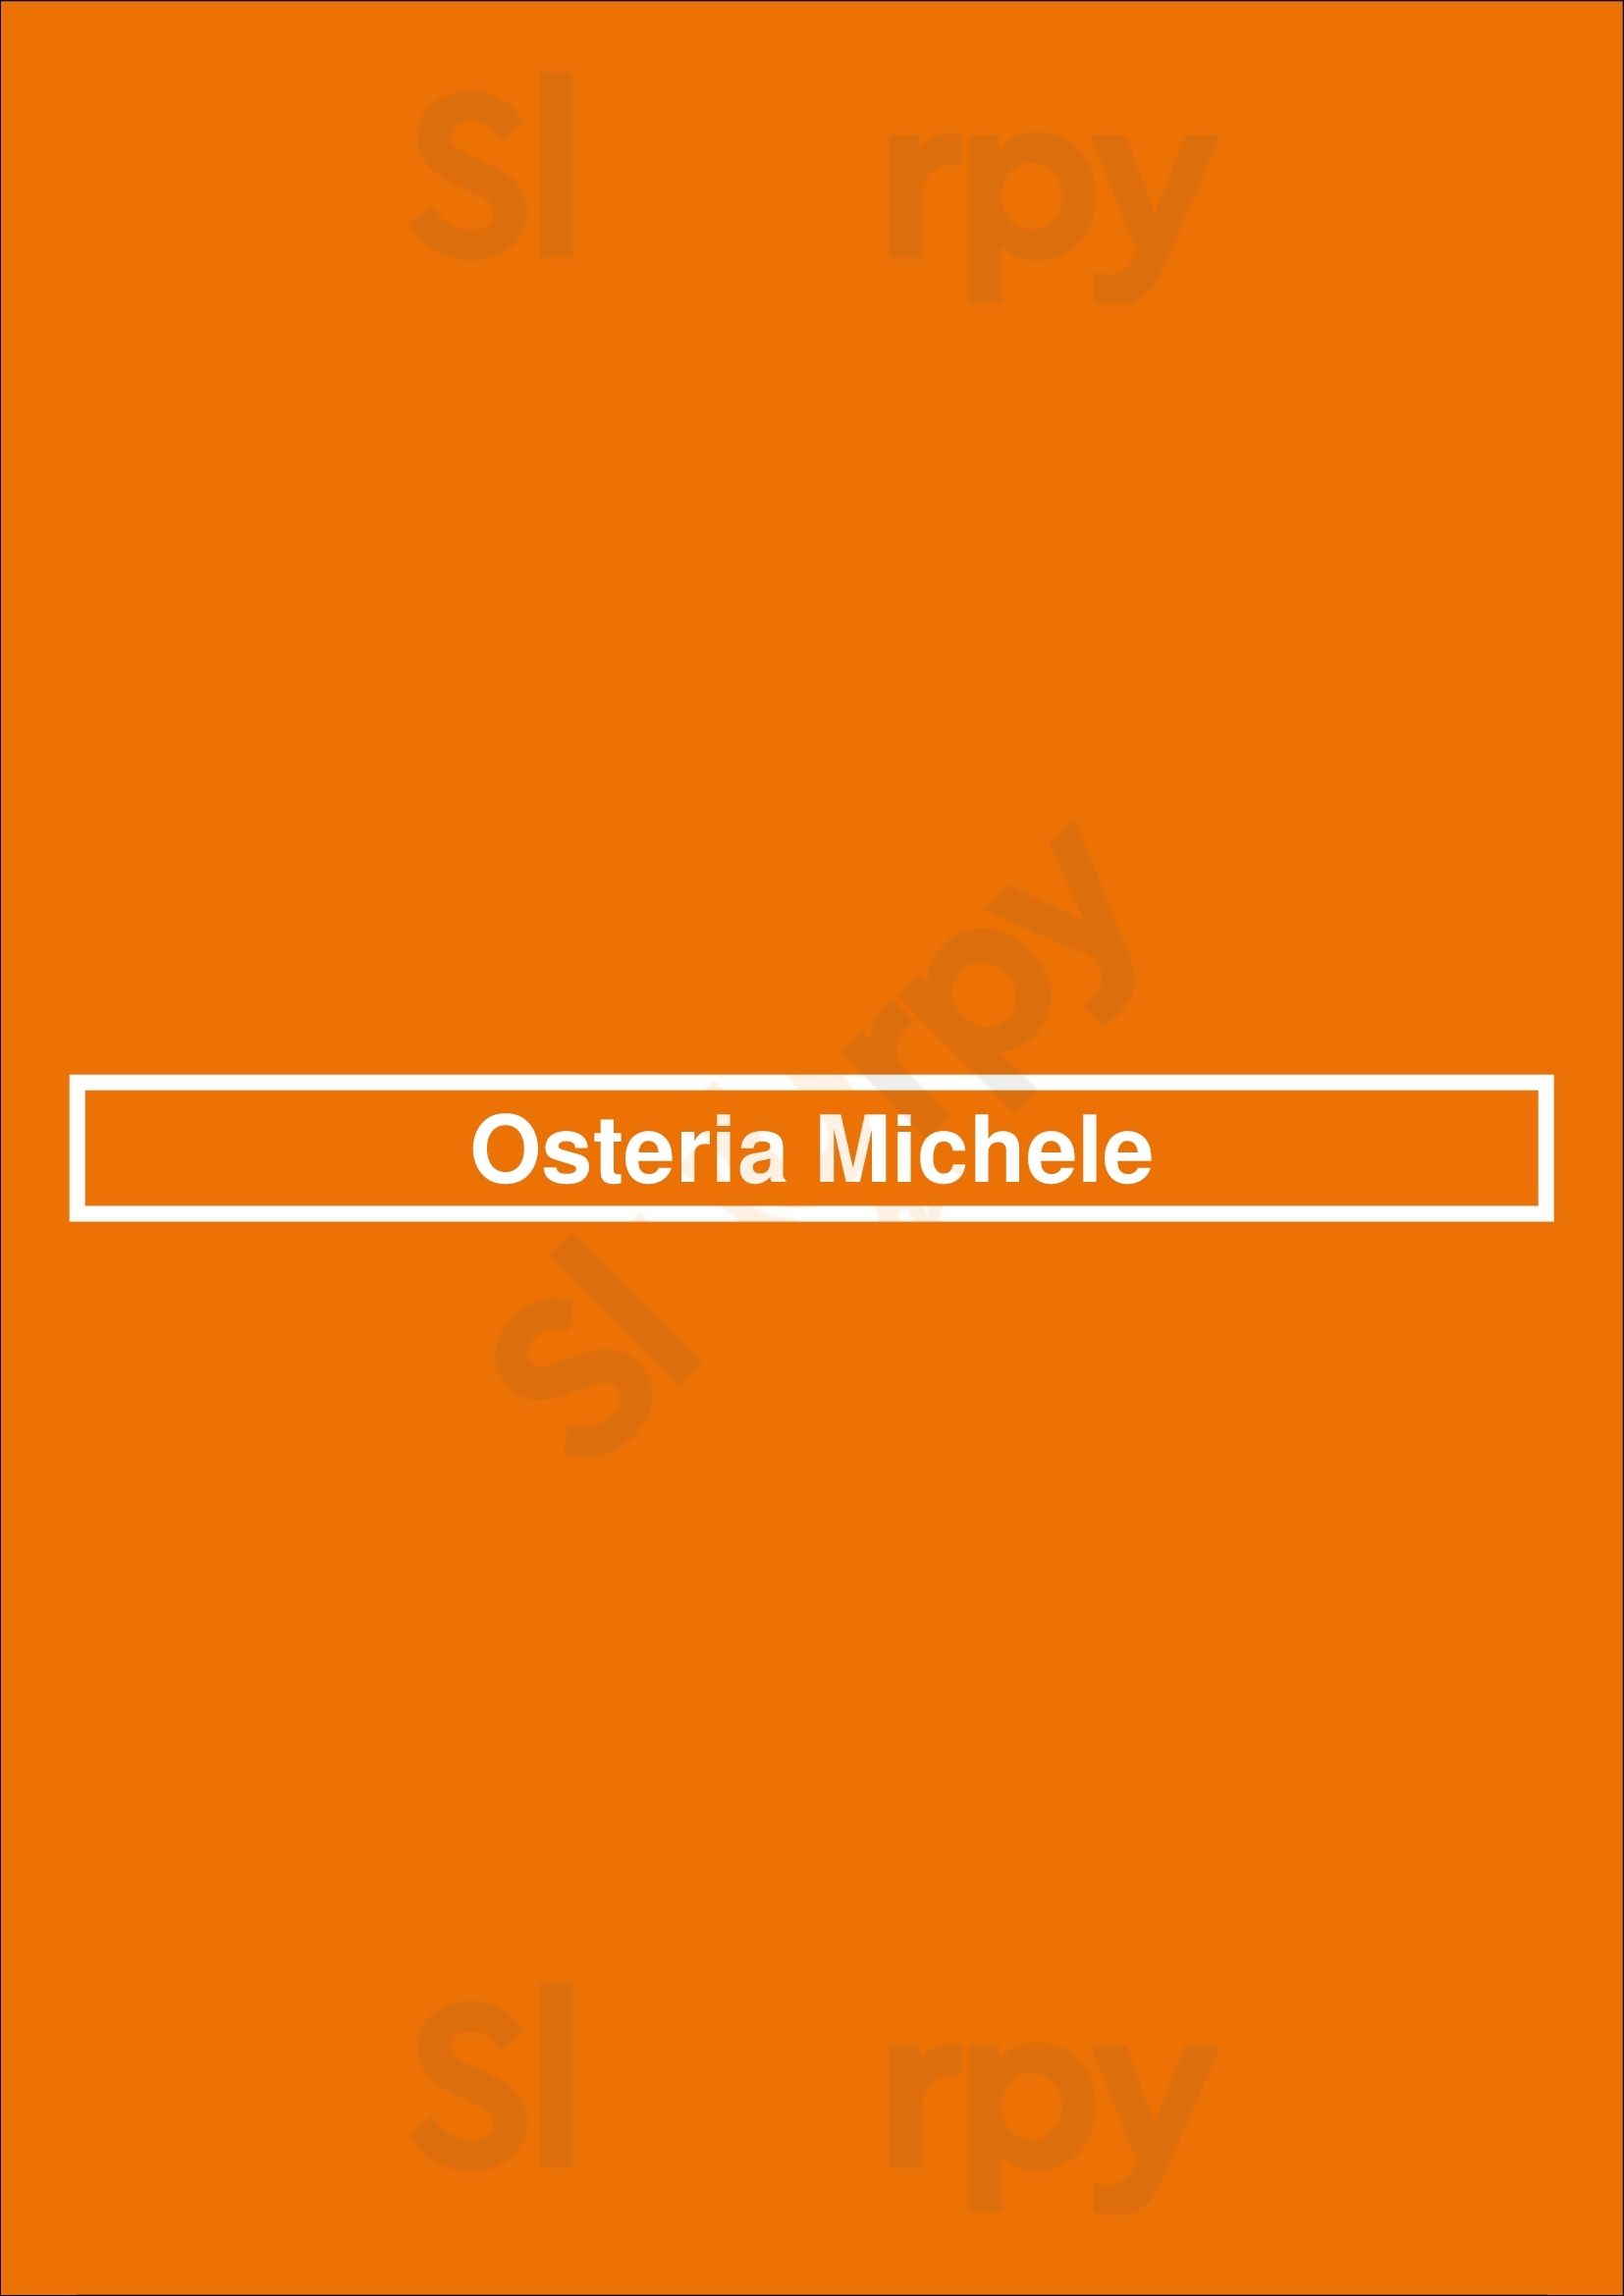 Osteria Michele Louvain Menu - 1